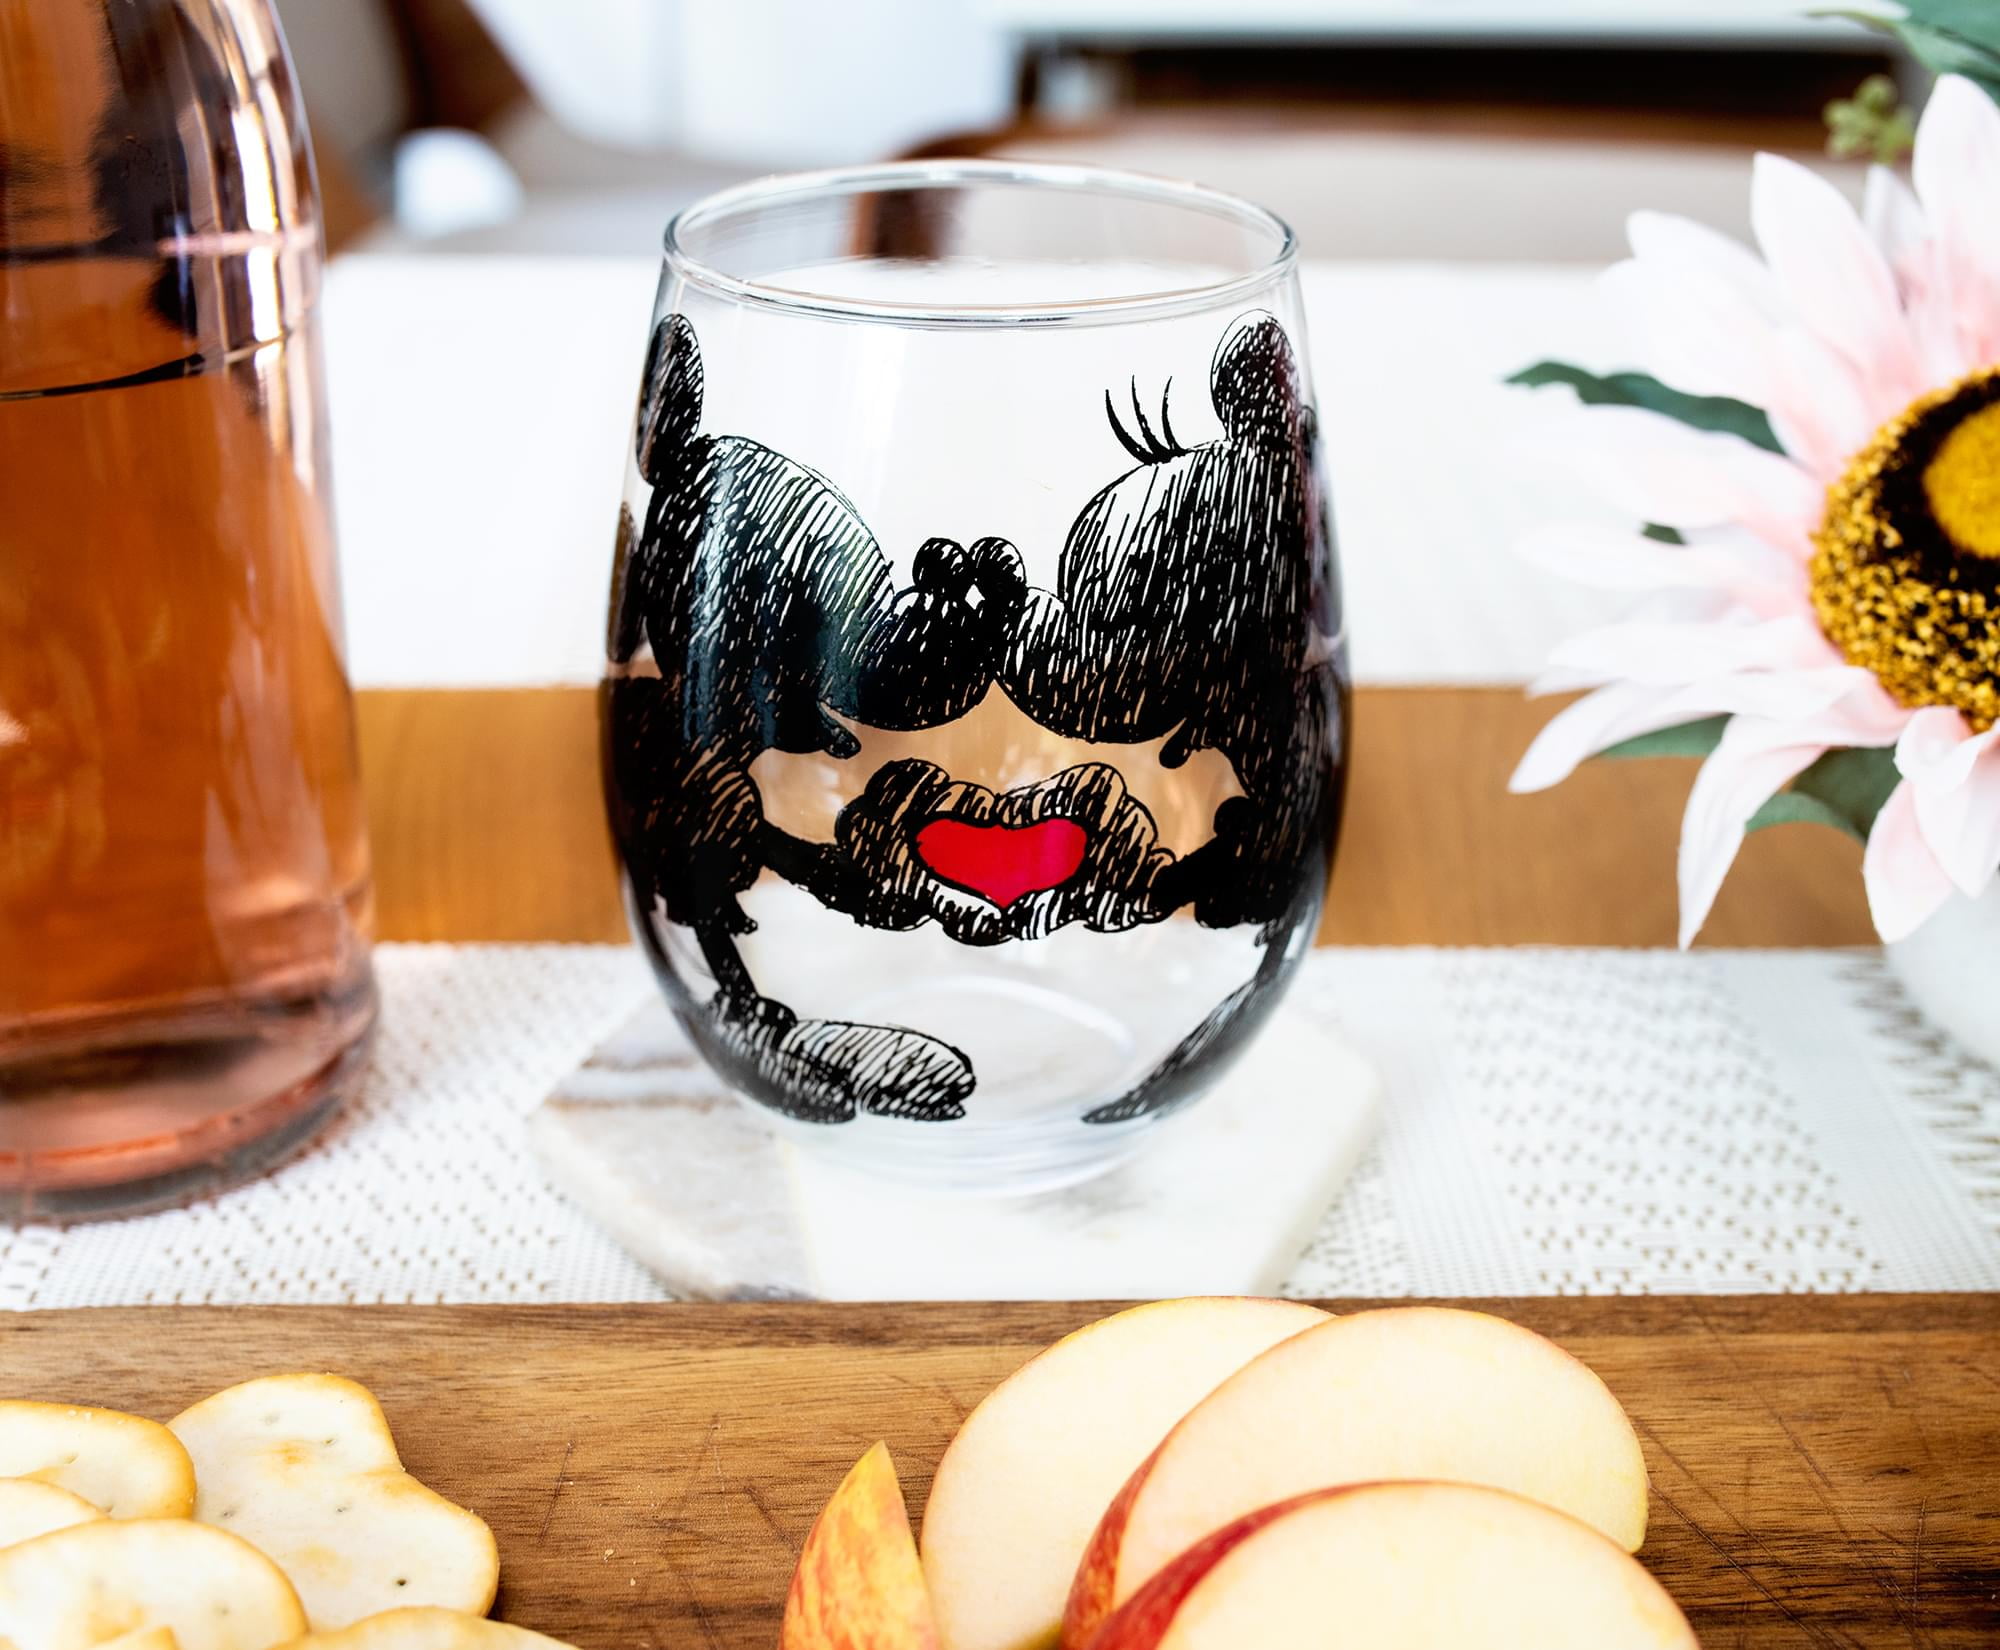 Disney 46040 Mickey & Minnie Kissing Wine Glass Set - 14.5 oz, 1 - Food 4  Less